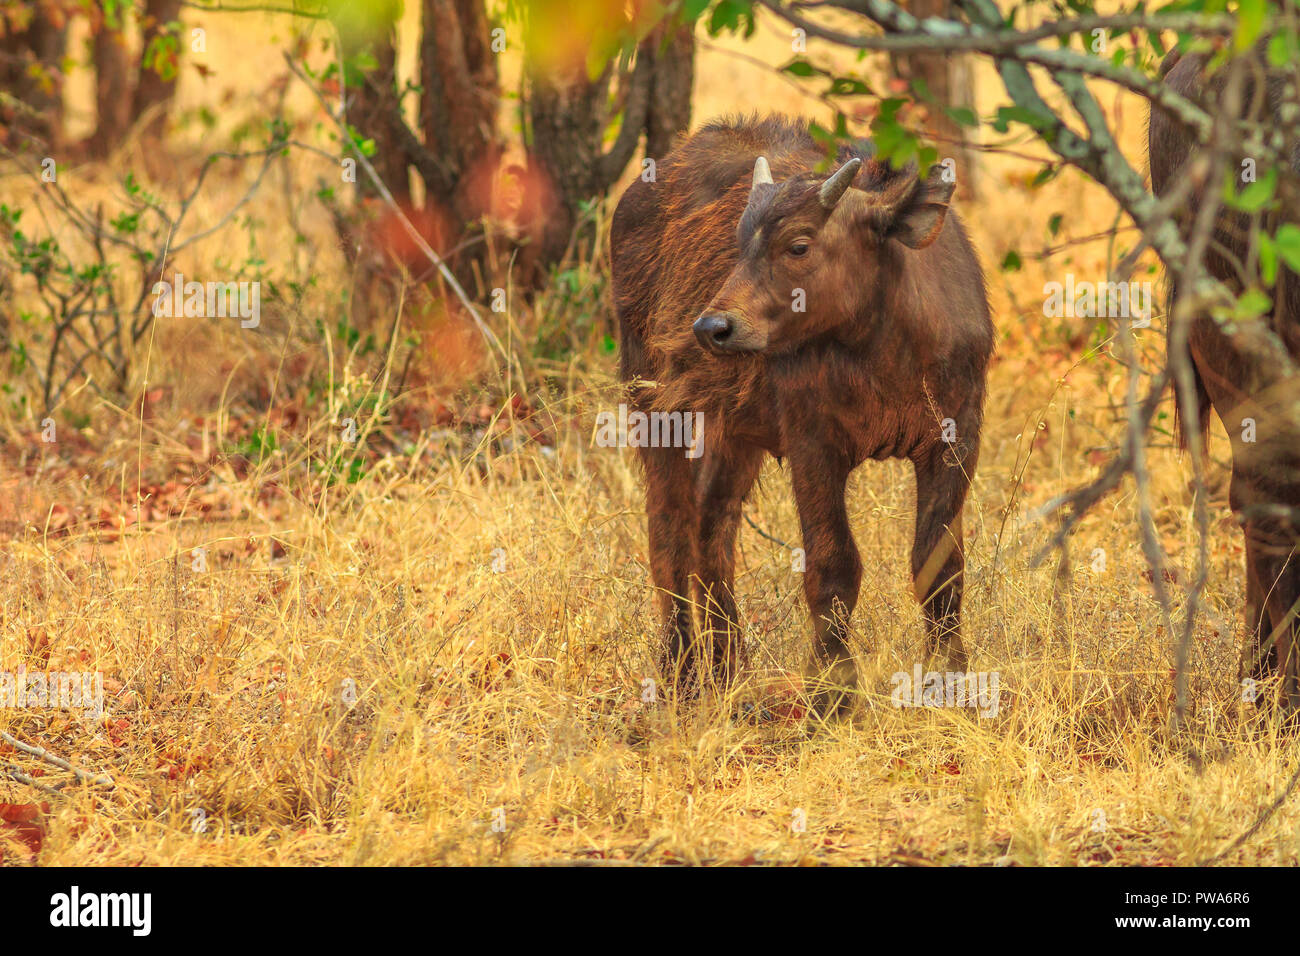 Junge afrikanische Büffel, Syncerus caffer, im Grünland Natur stehend, trockenen Jahreszeit. Krüger Nationalpark in Südafrika. Der Büffel ist eine große afrikanische Rinder Teil der beliebten Big Five. Stockfoto